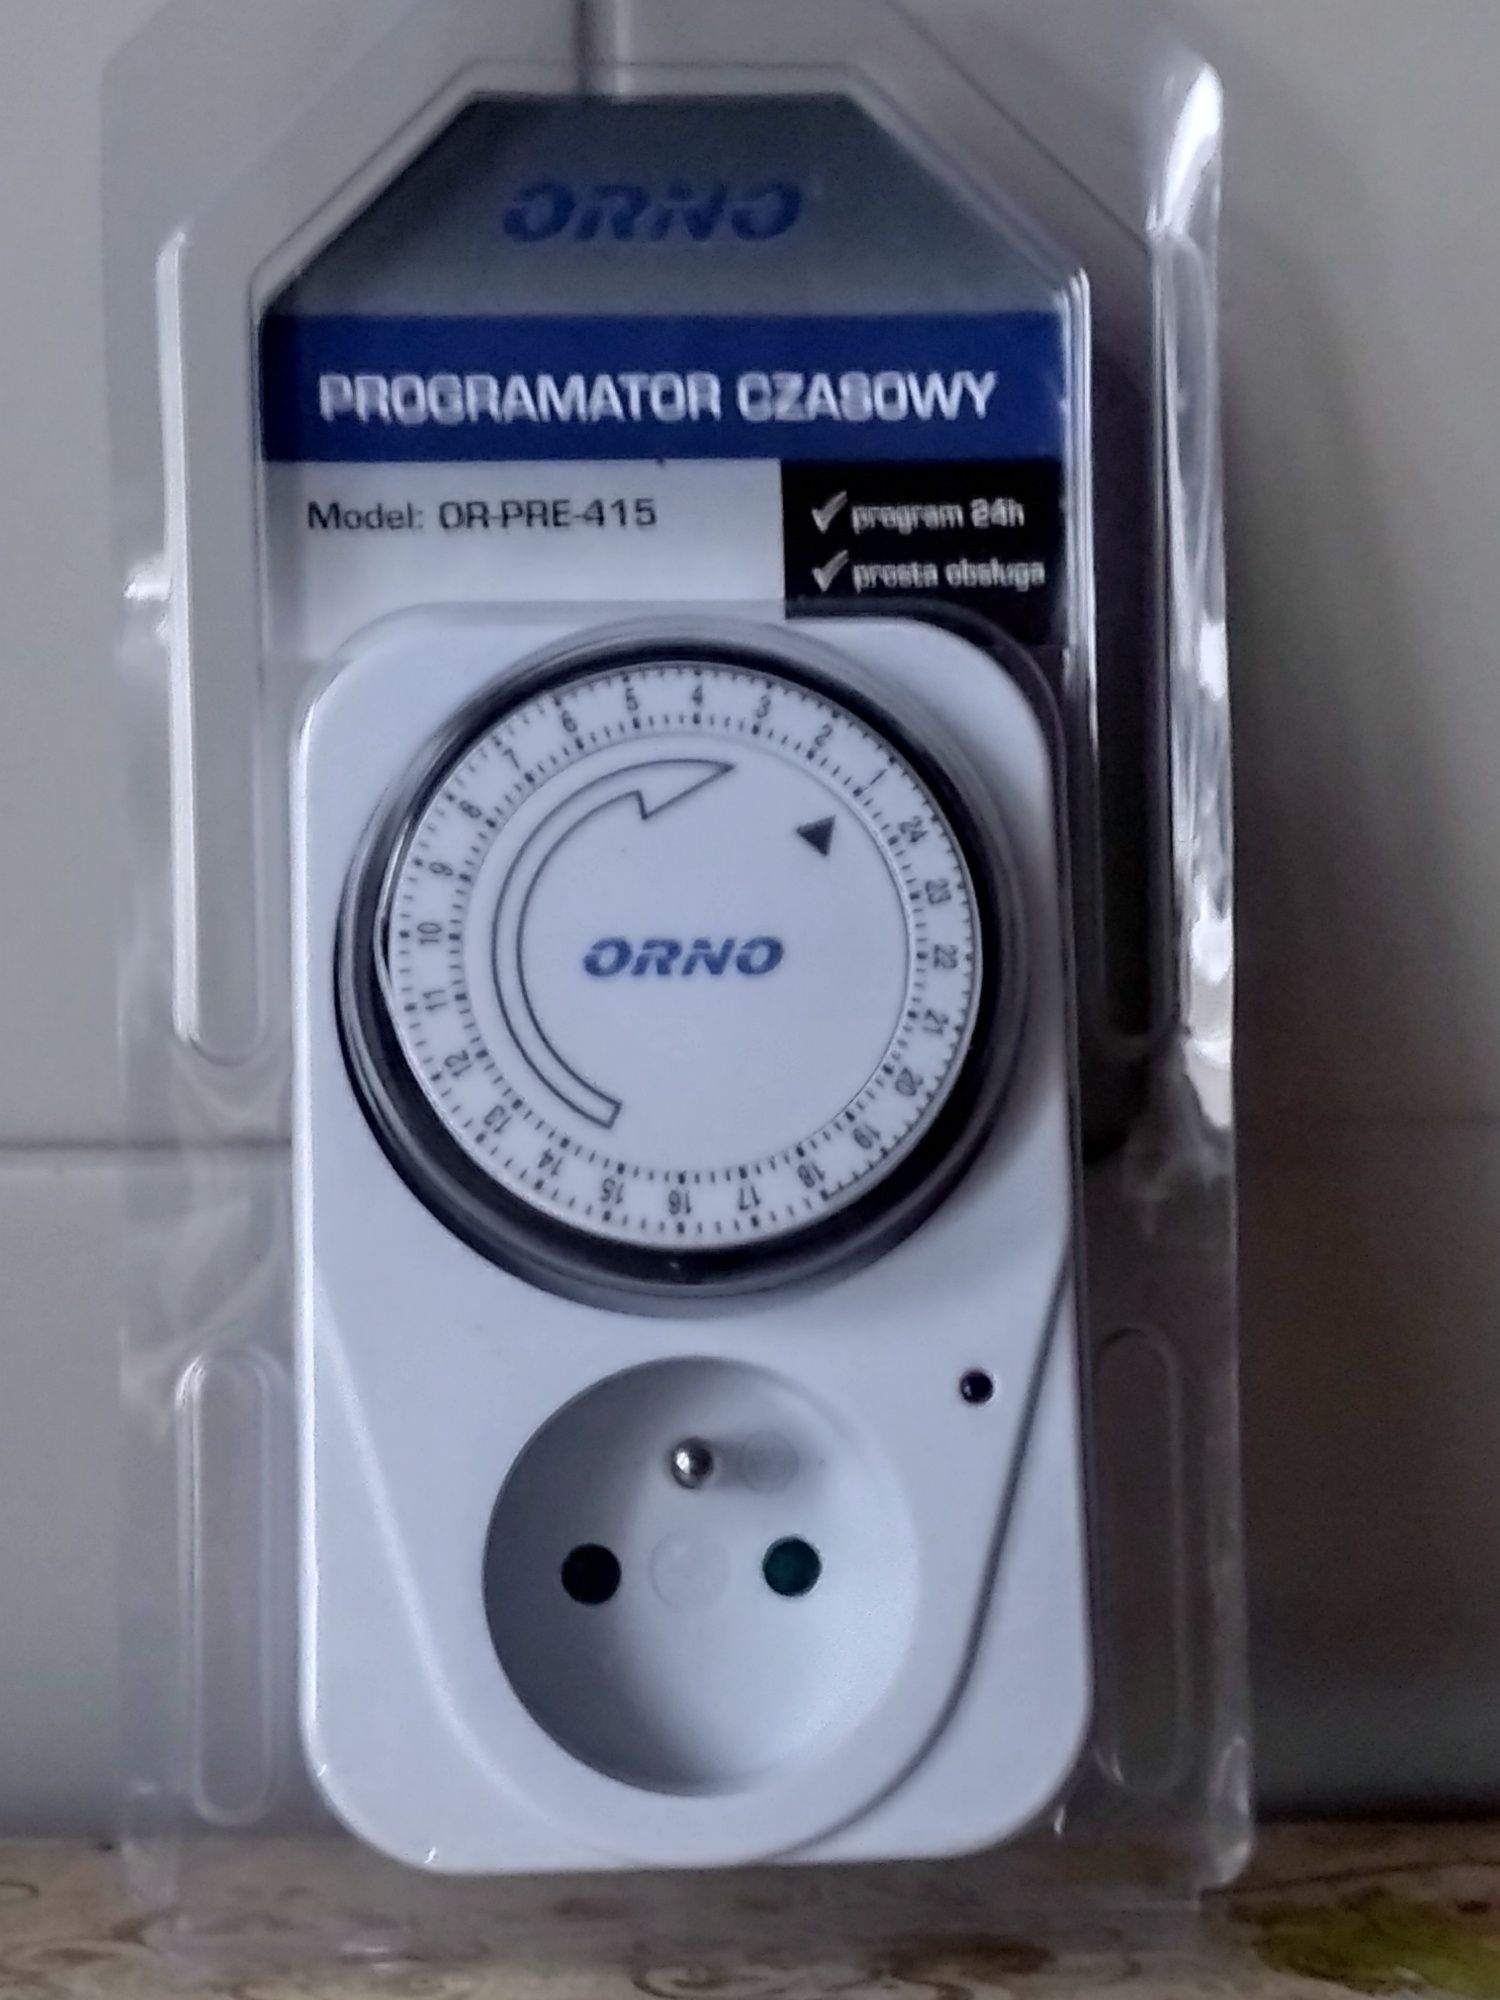 Programator czasowy " ORNO"